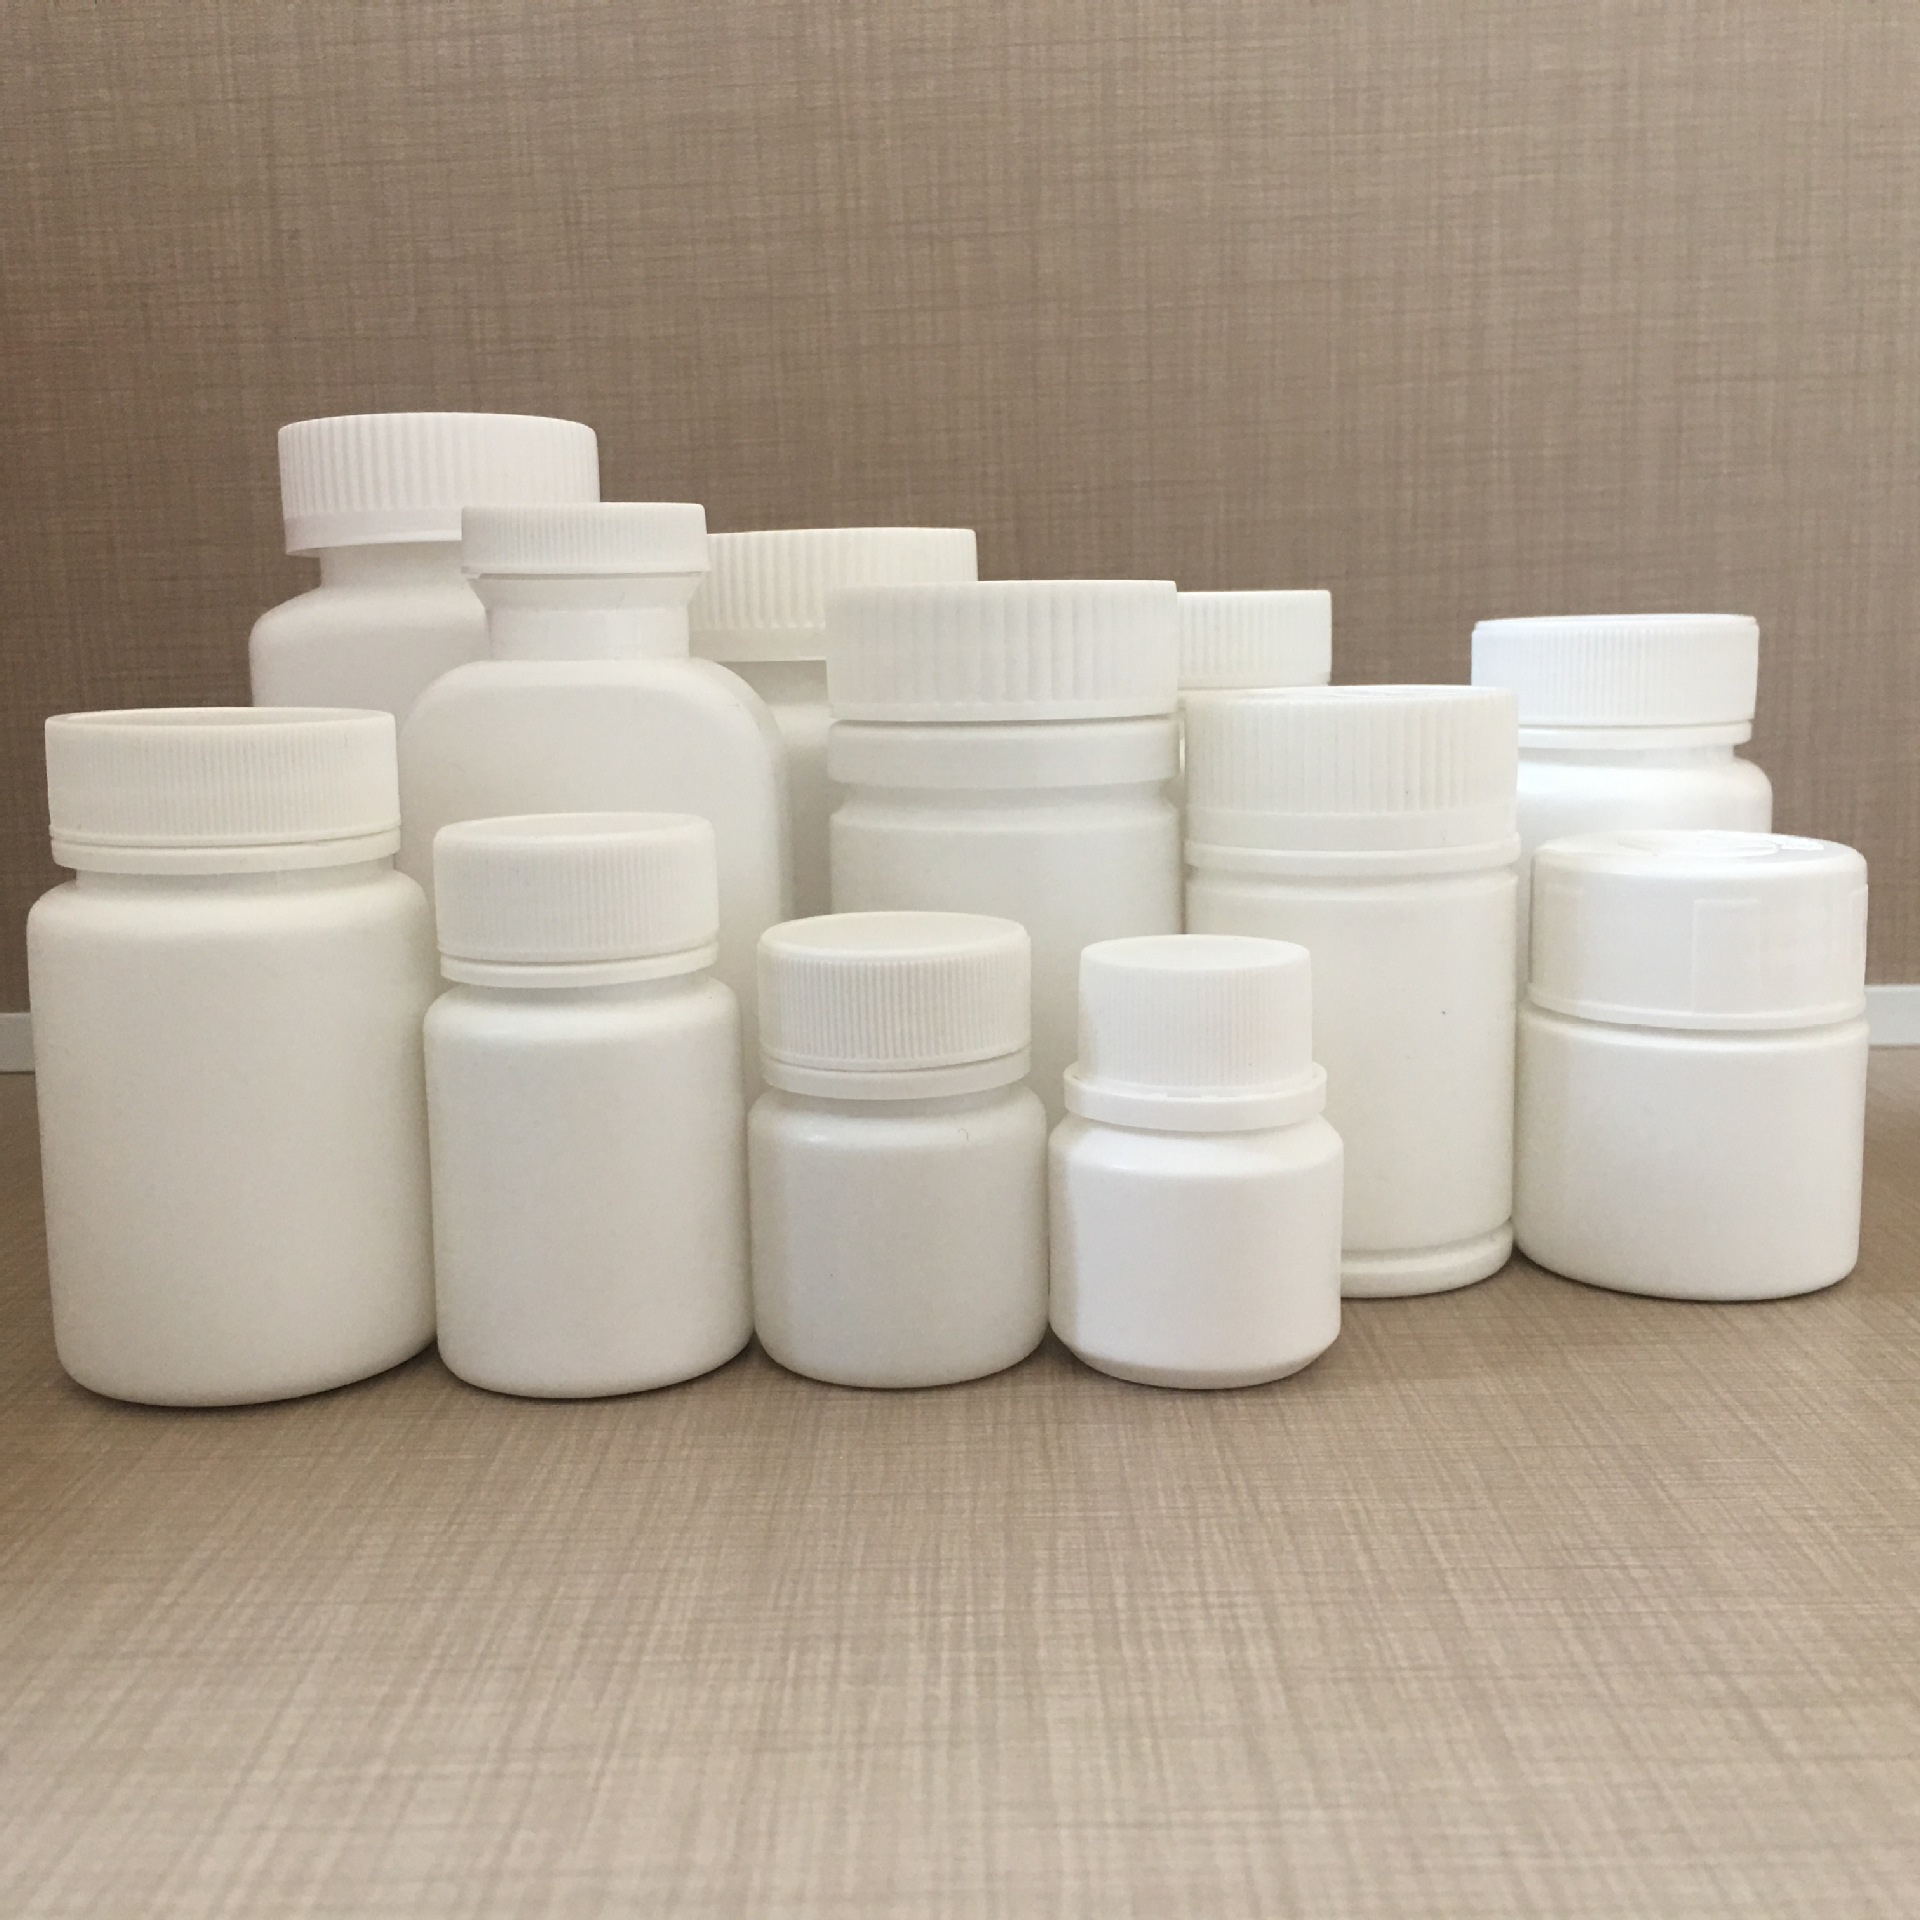 厂家直销pet塑料罐食品塑料罐药用塑料罐包装罐现货供应价格优惠示例图13